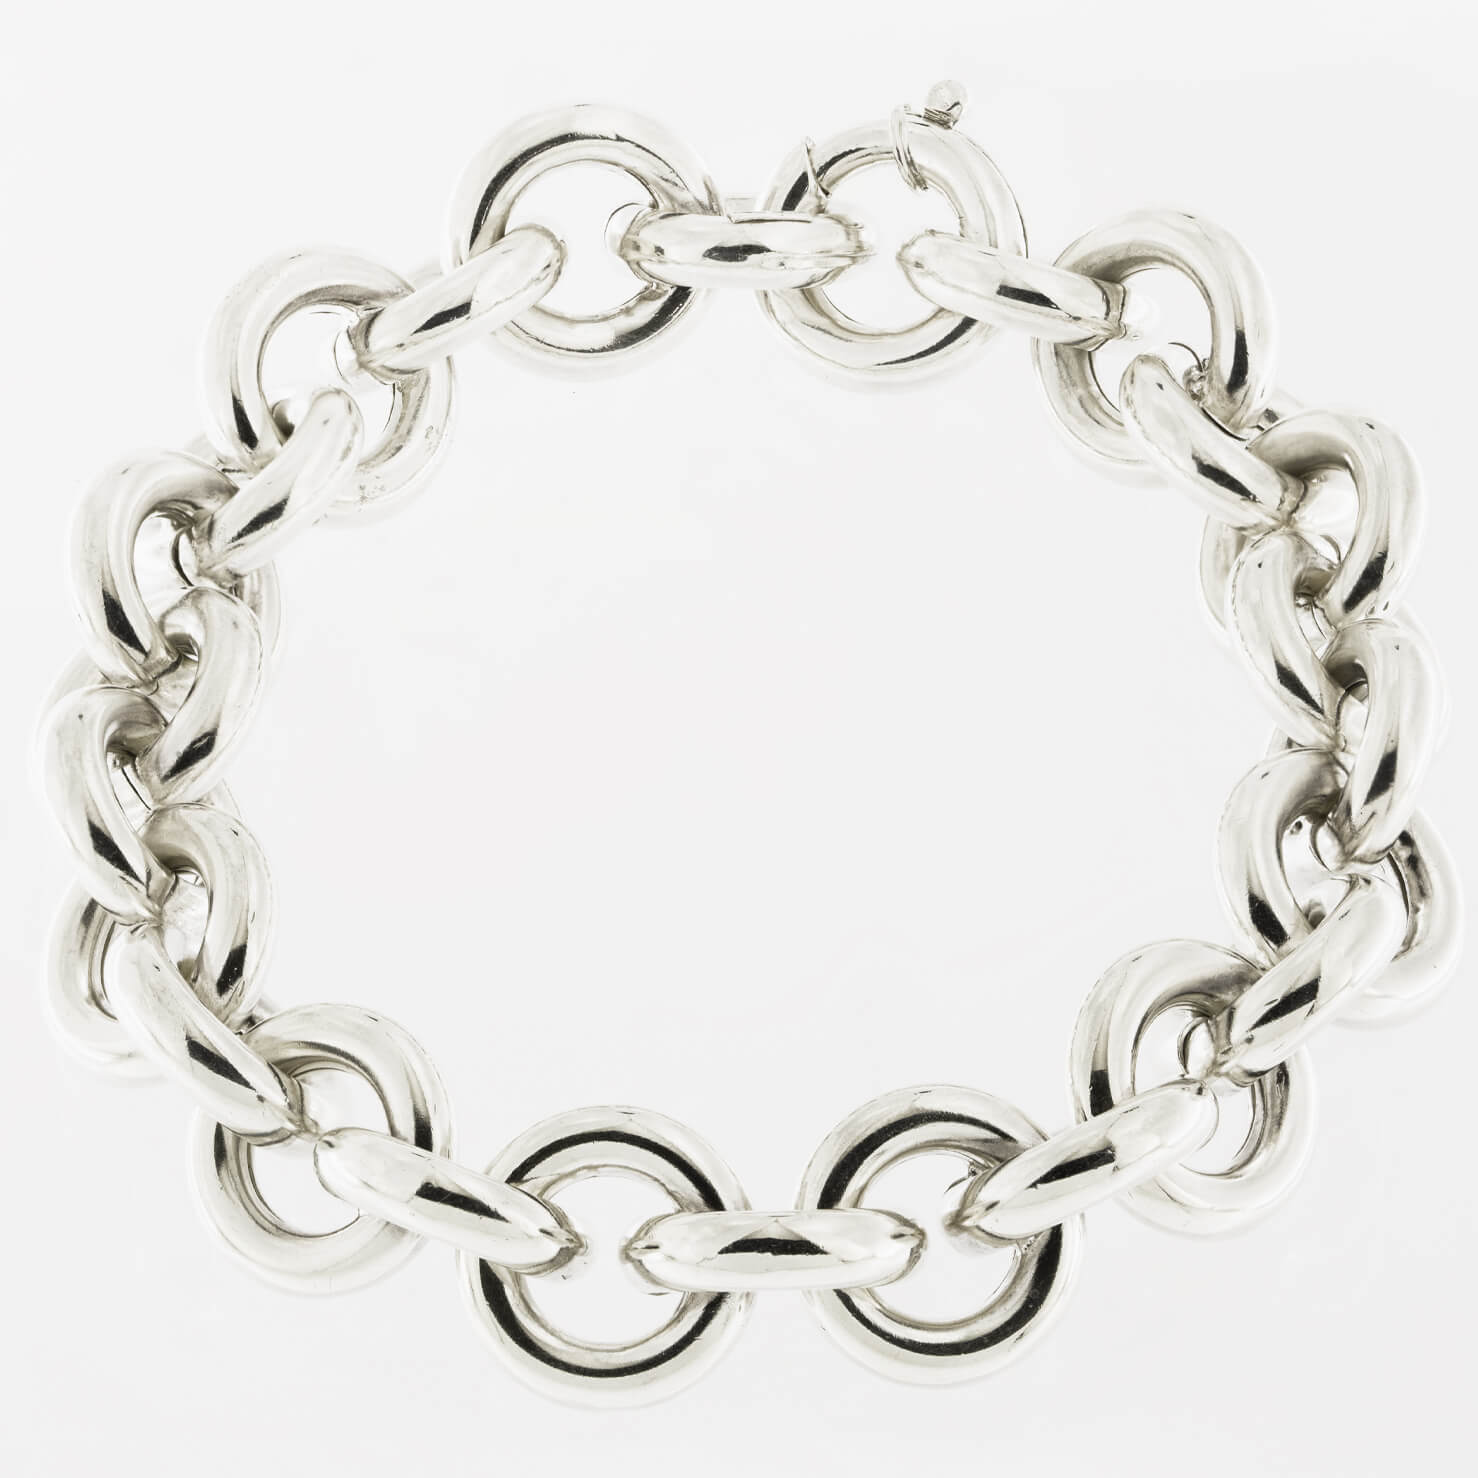 Anello catena maglia grossa in argento 925